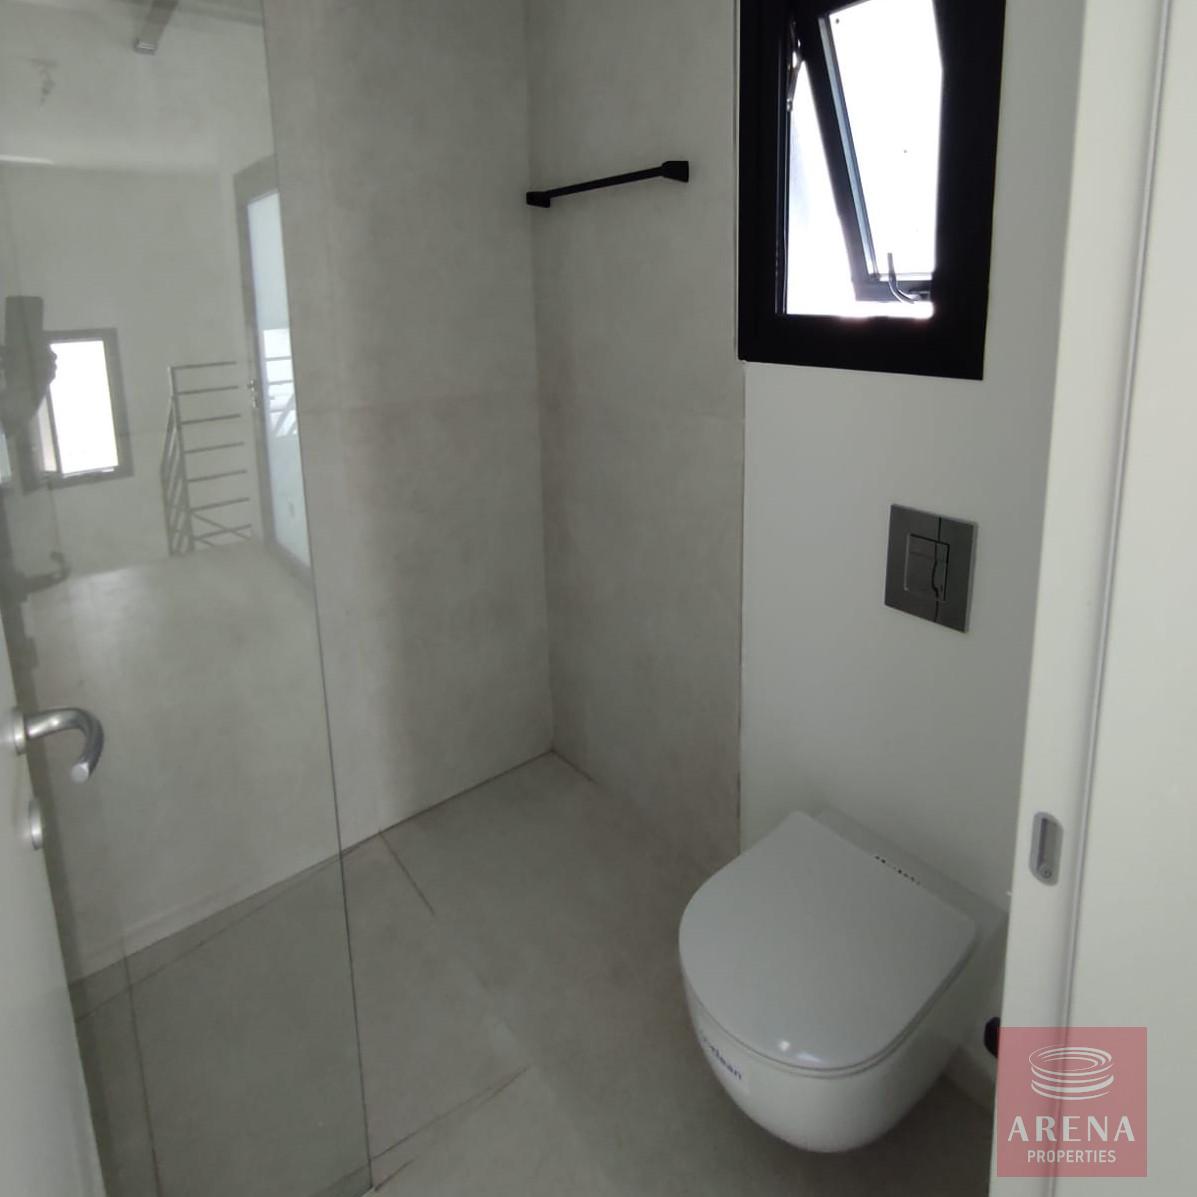 2 bed villa in cape greco - bathroom